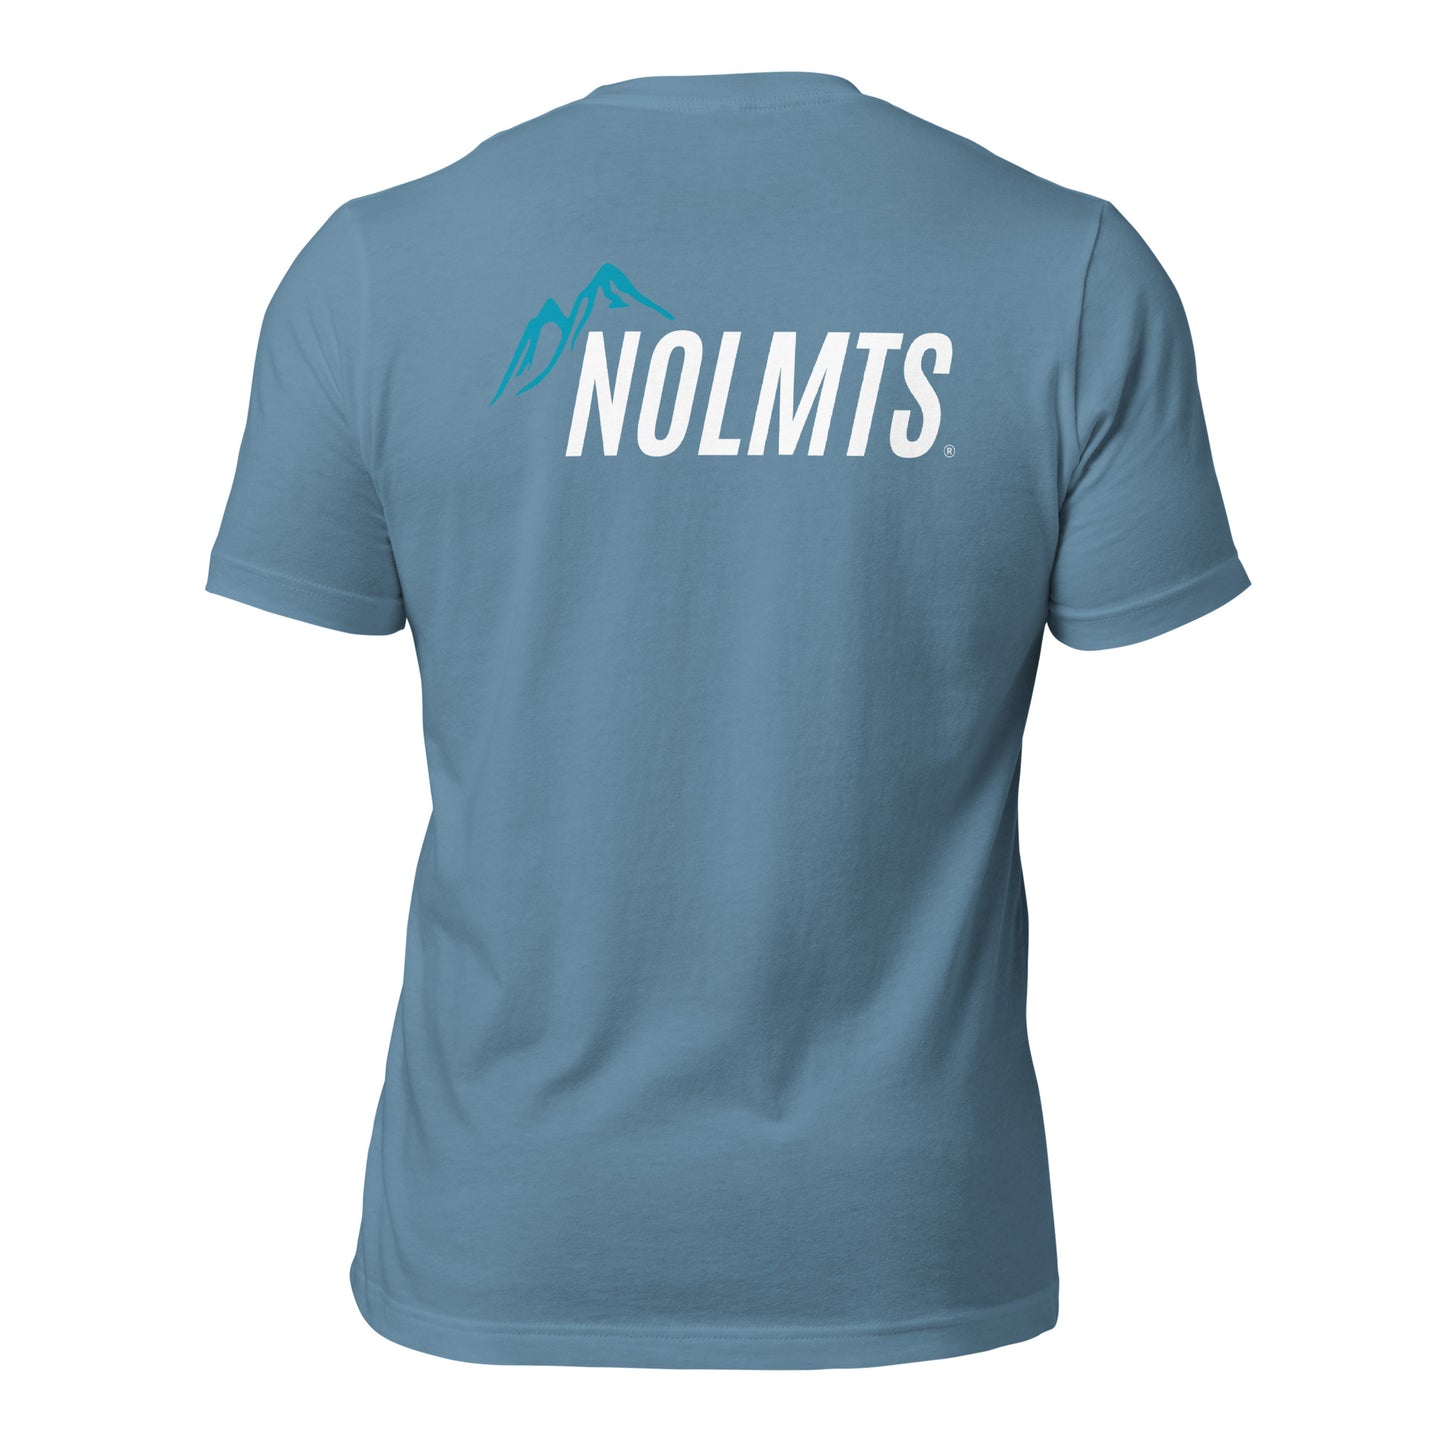 NOLMTS™ Technical Shirt